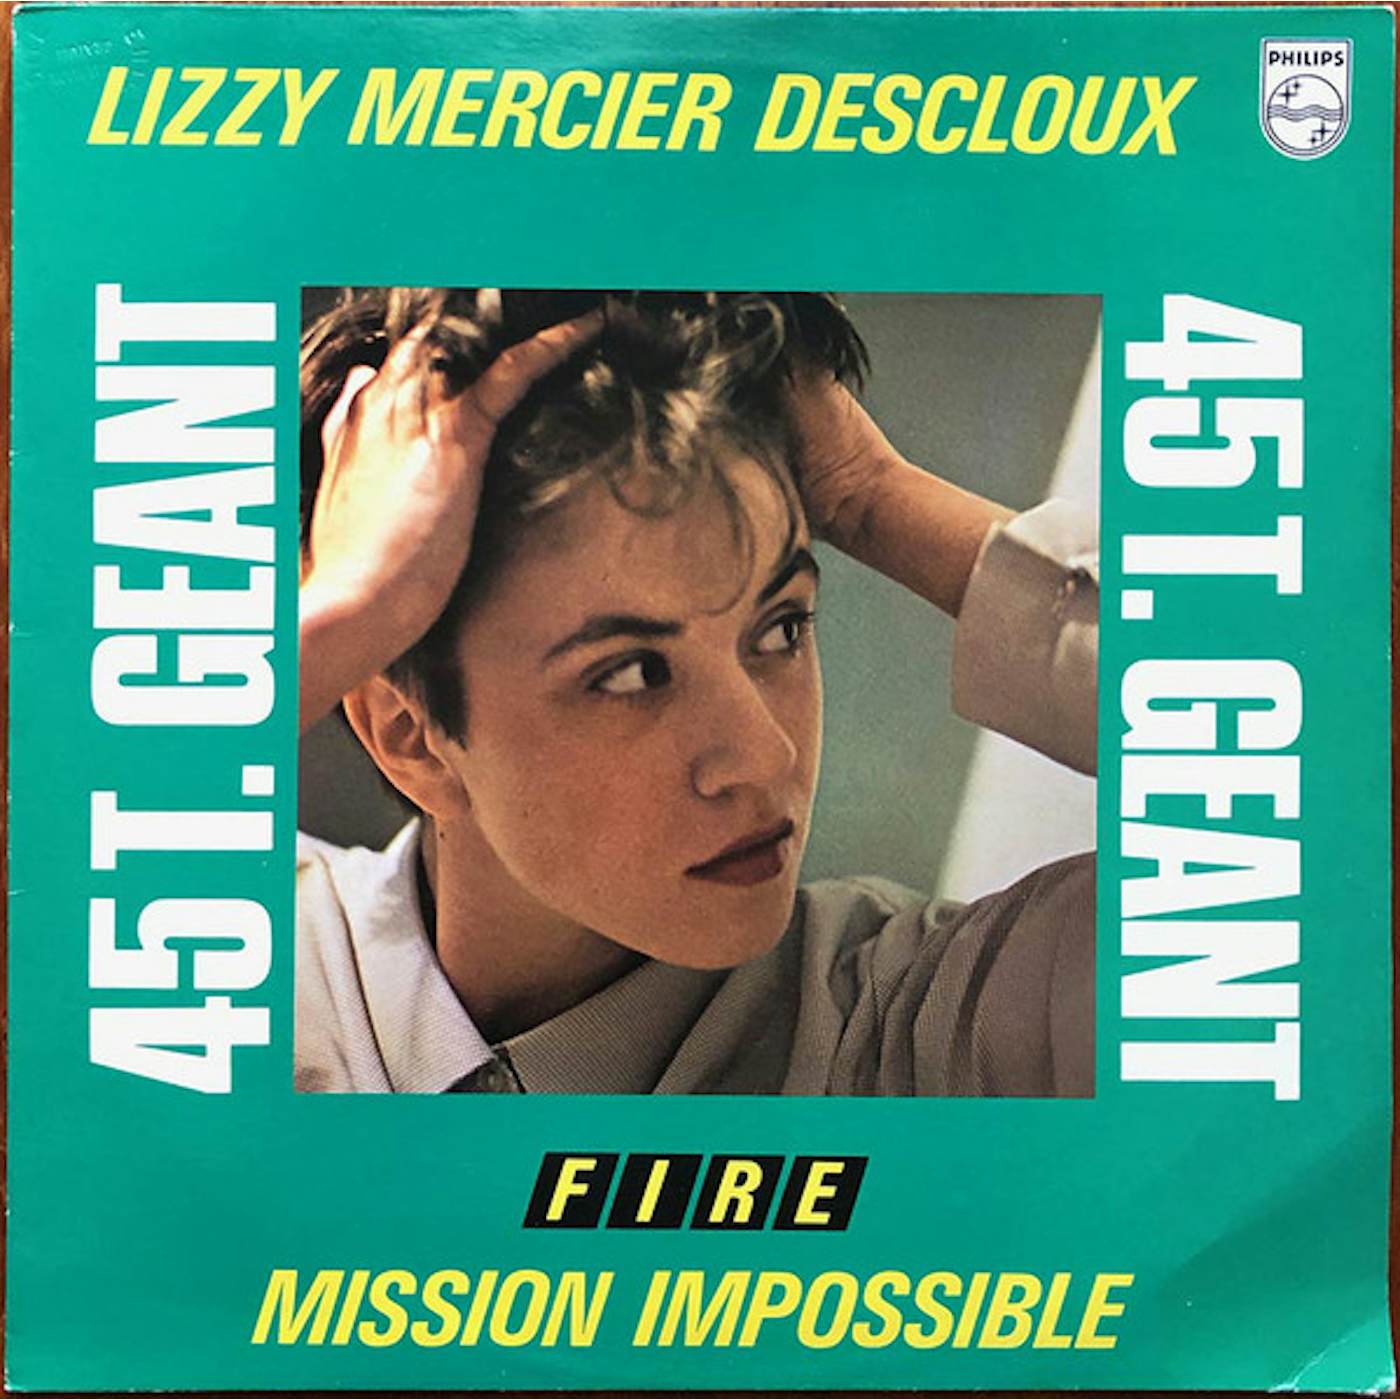 Lizzy Mercier Descloux Mission Impossible Vinyl Record